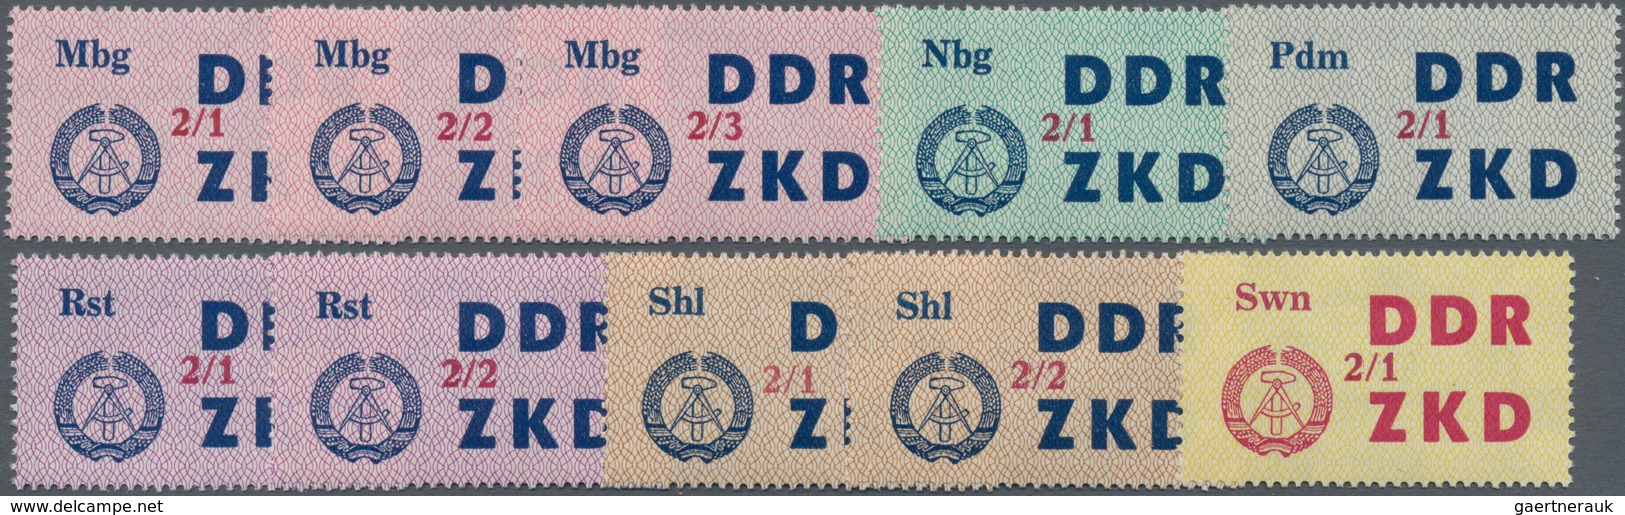 DDR - Dienstmarken C (Laufkontrollzettel ZKD): 1964, Laufkontrollzettel der VVB mit lilarotem Buchdr